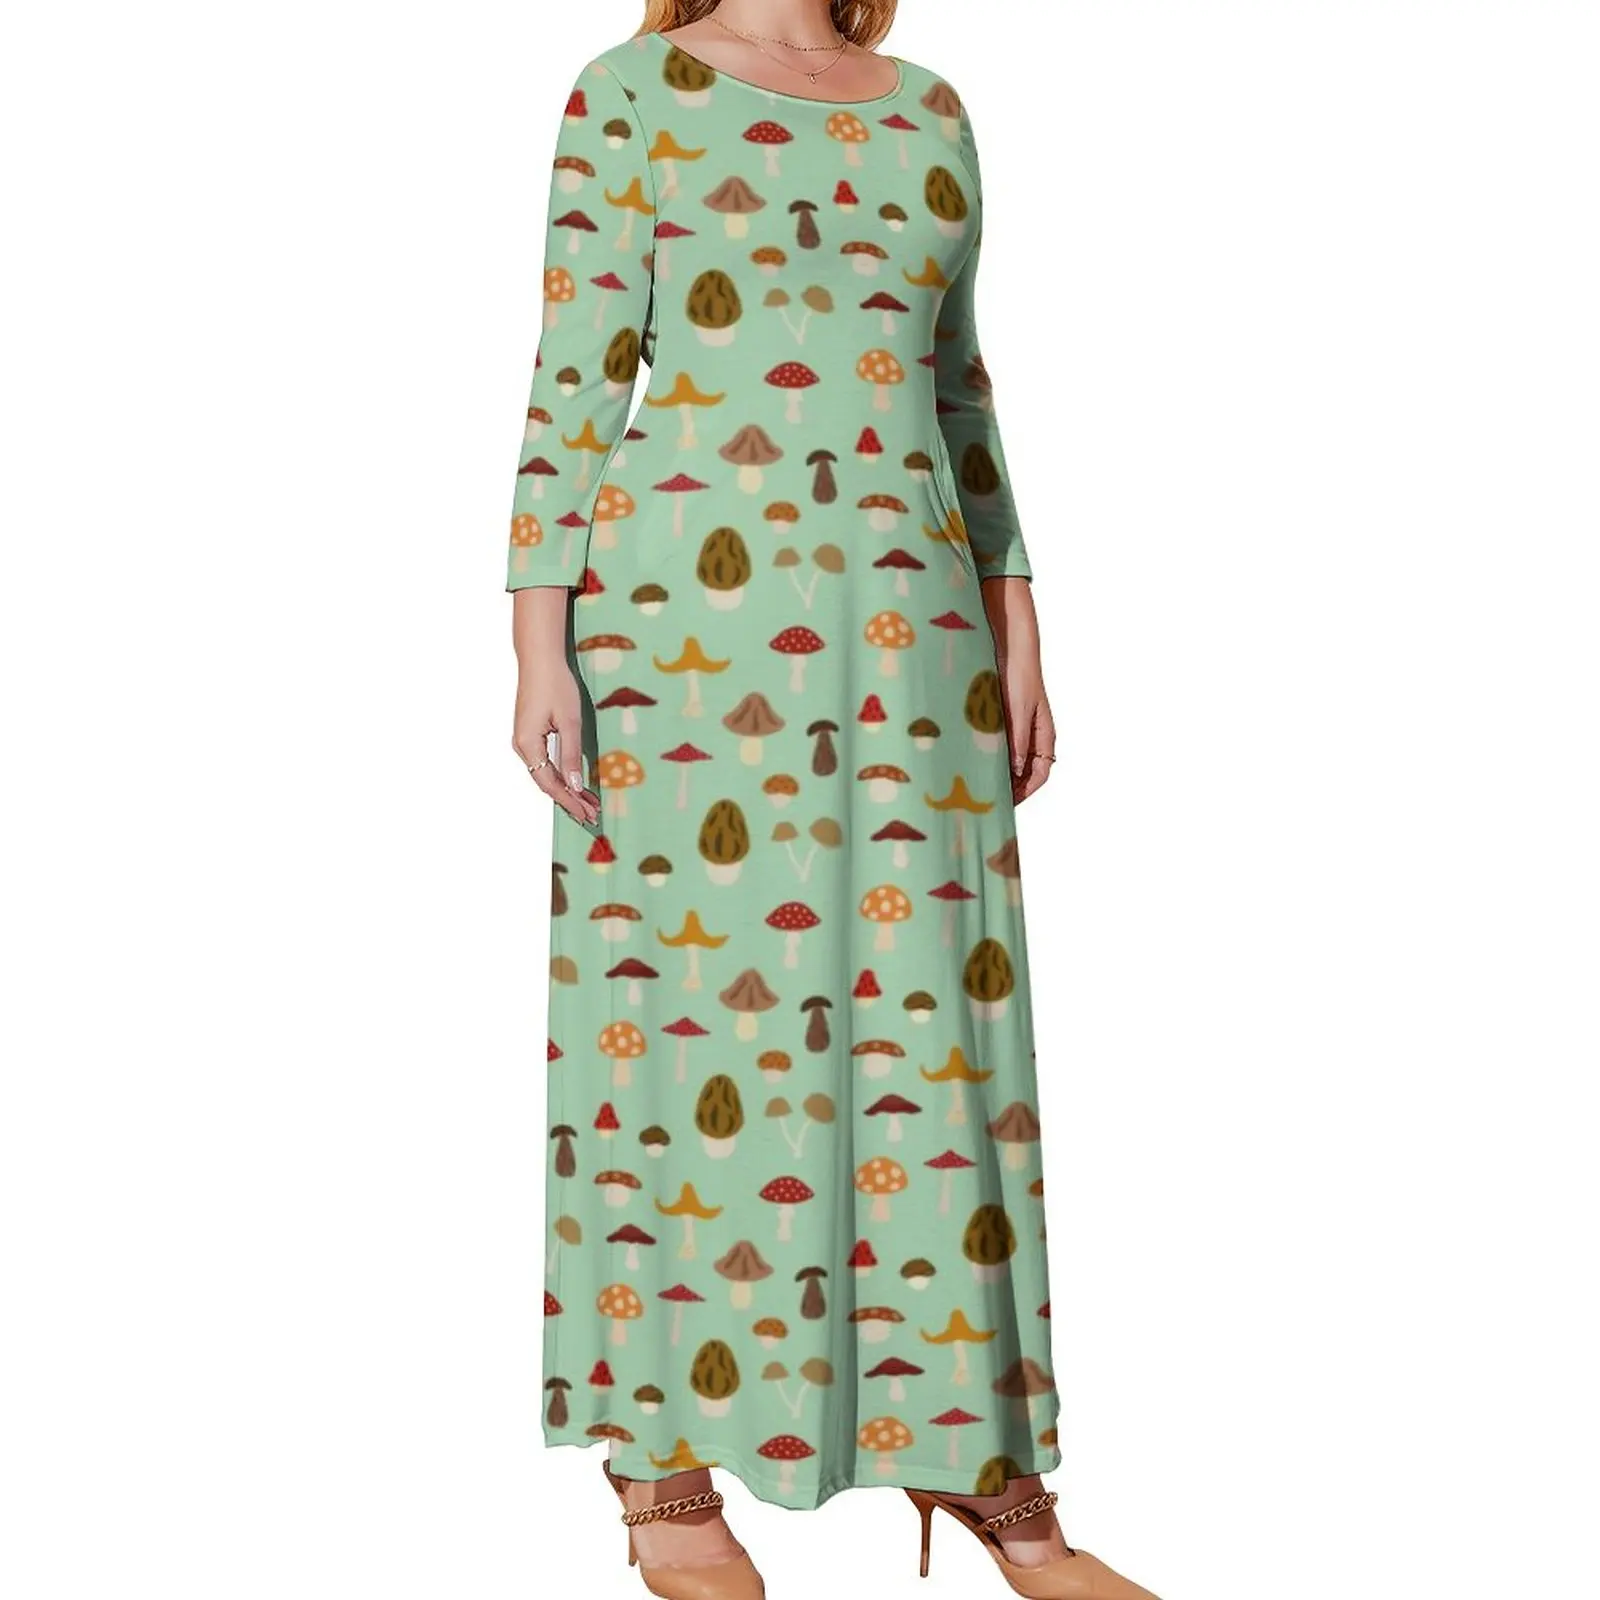 Autumn Mushrooms Dress Women Cute Little Mushroom Cute Maxi Dress Aesthetic Bohemia Long Dresses Print Vestido Plus Size 4XL 5XL